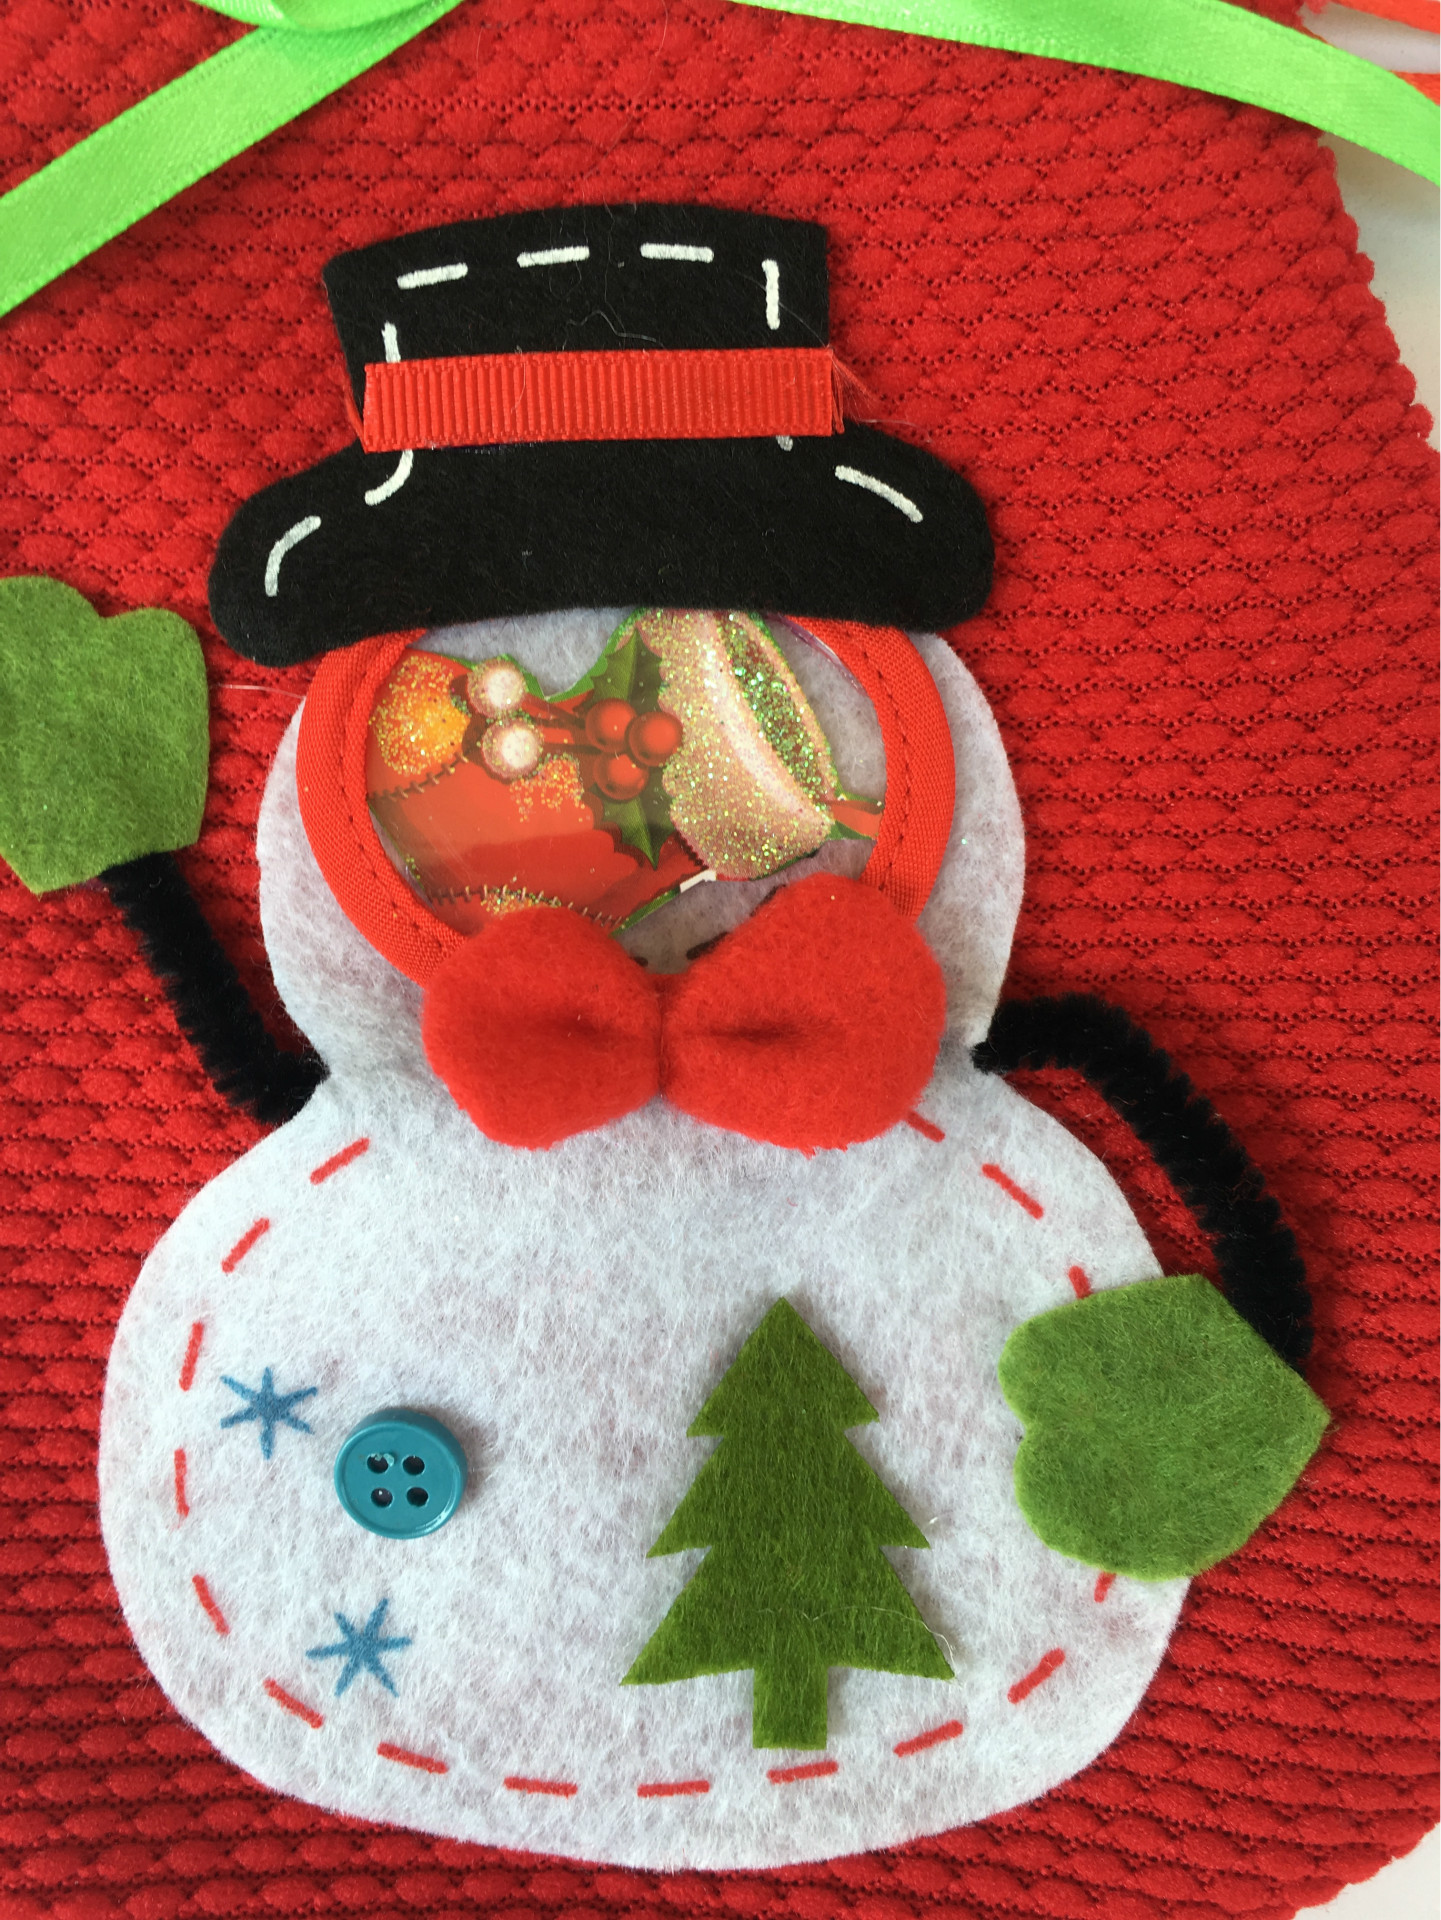 立體聖誕雪人糖果袋 禮品袋 創意家居 實用禮品 聖誕節必備 聖誕禮物袋4